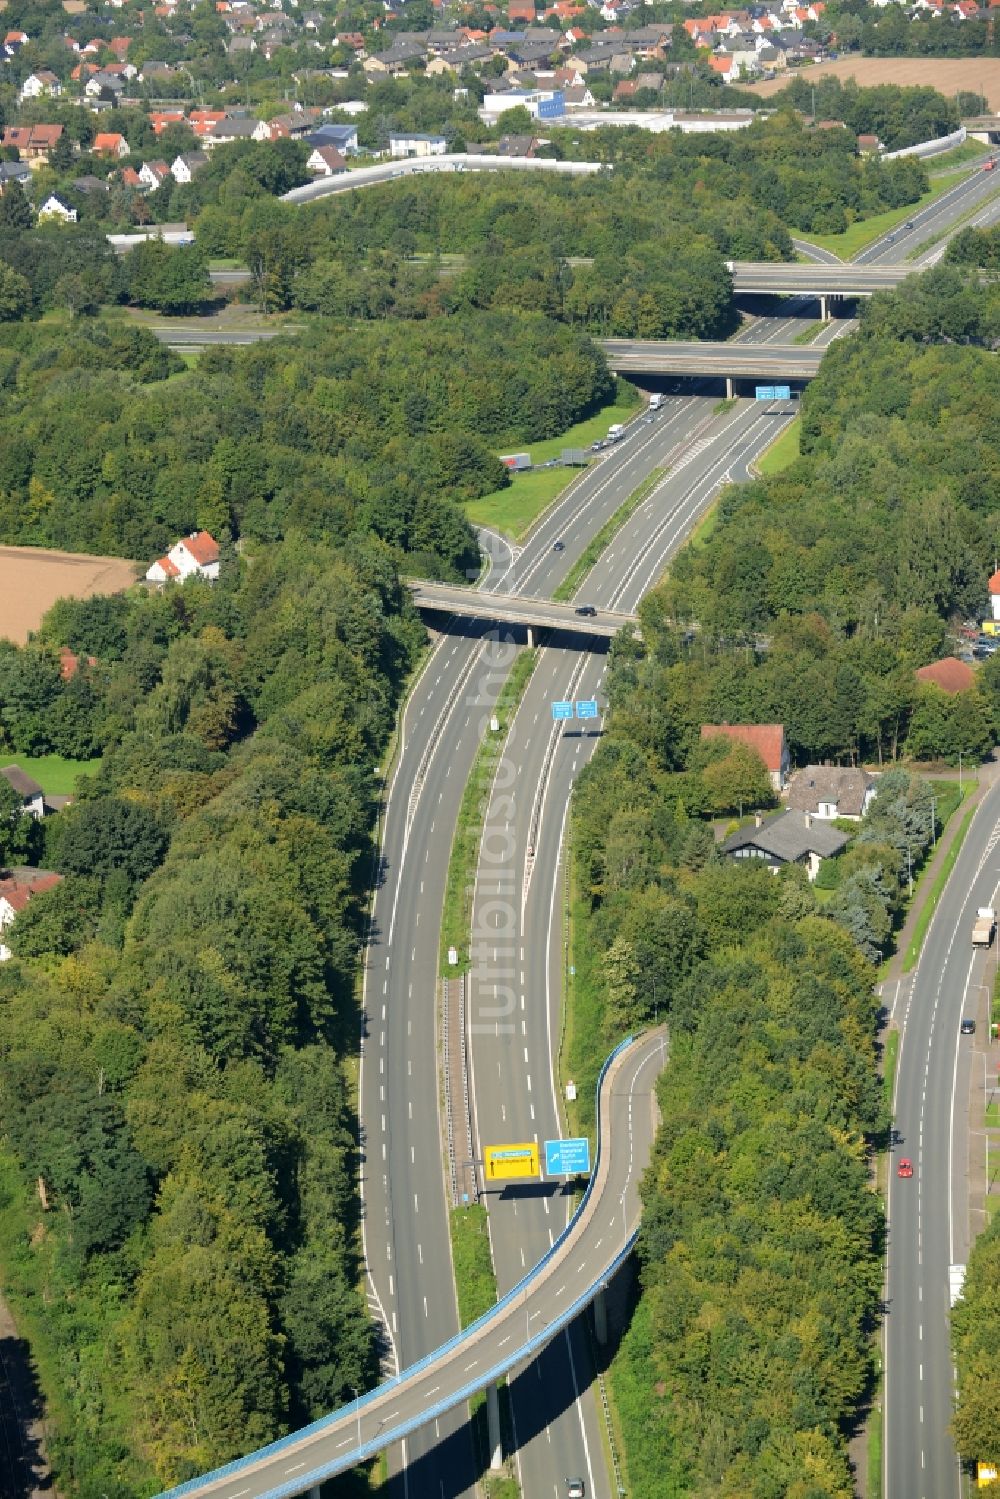 Bad Oeynhausen von oben - Autobahn- Streckenverlauf der Bundesautobahn A30 im Bereich des Kreuz Bad Oeynhausen im Osten von Bad Oeynhausen im Bundesland Nordrhein-Westfalen